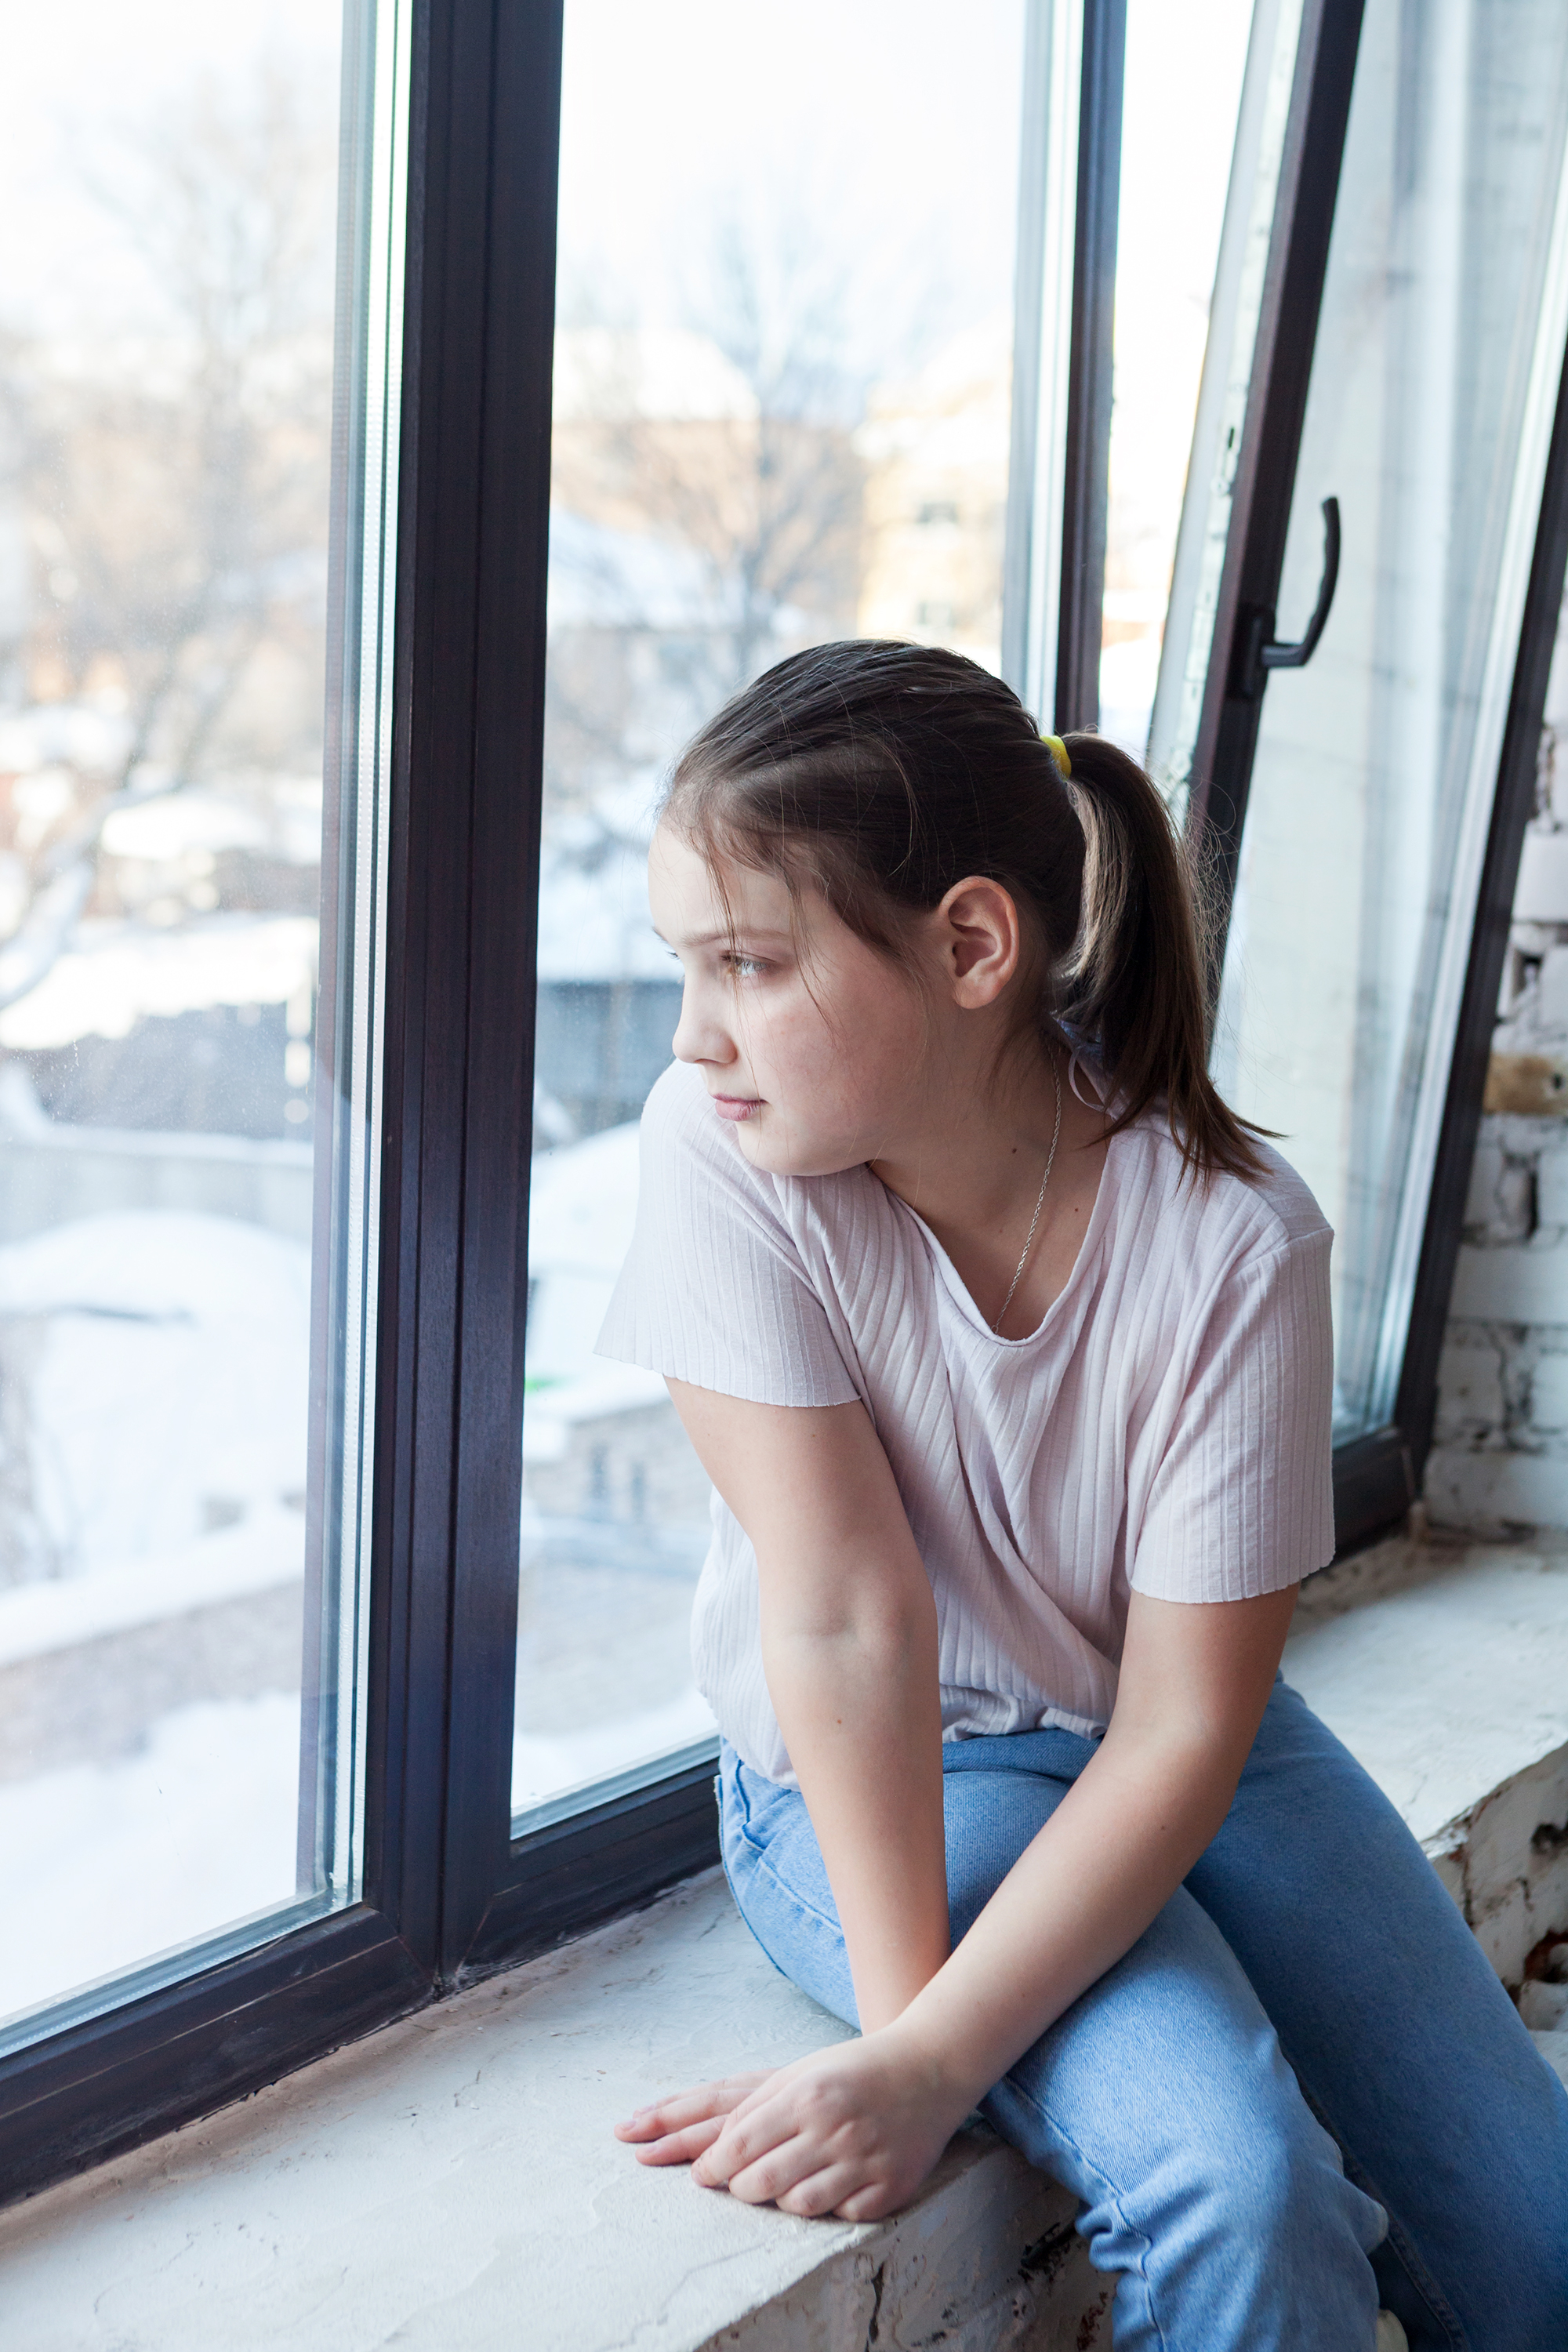 Jeune fille regardant par la fenêtre | Source : Shutterstock